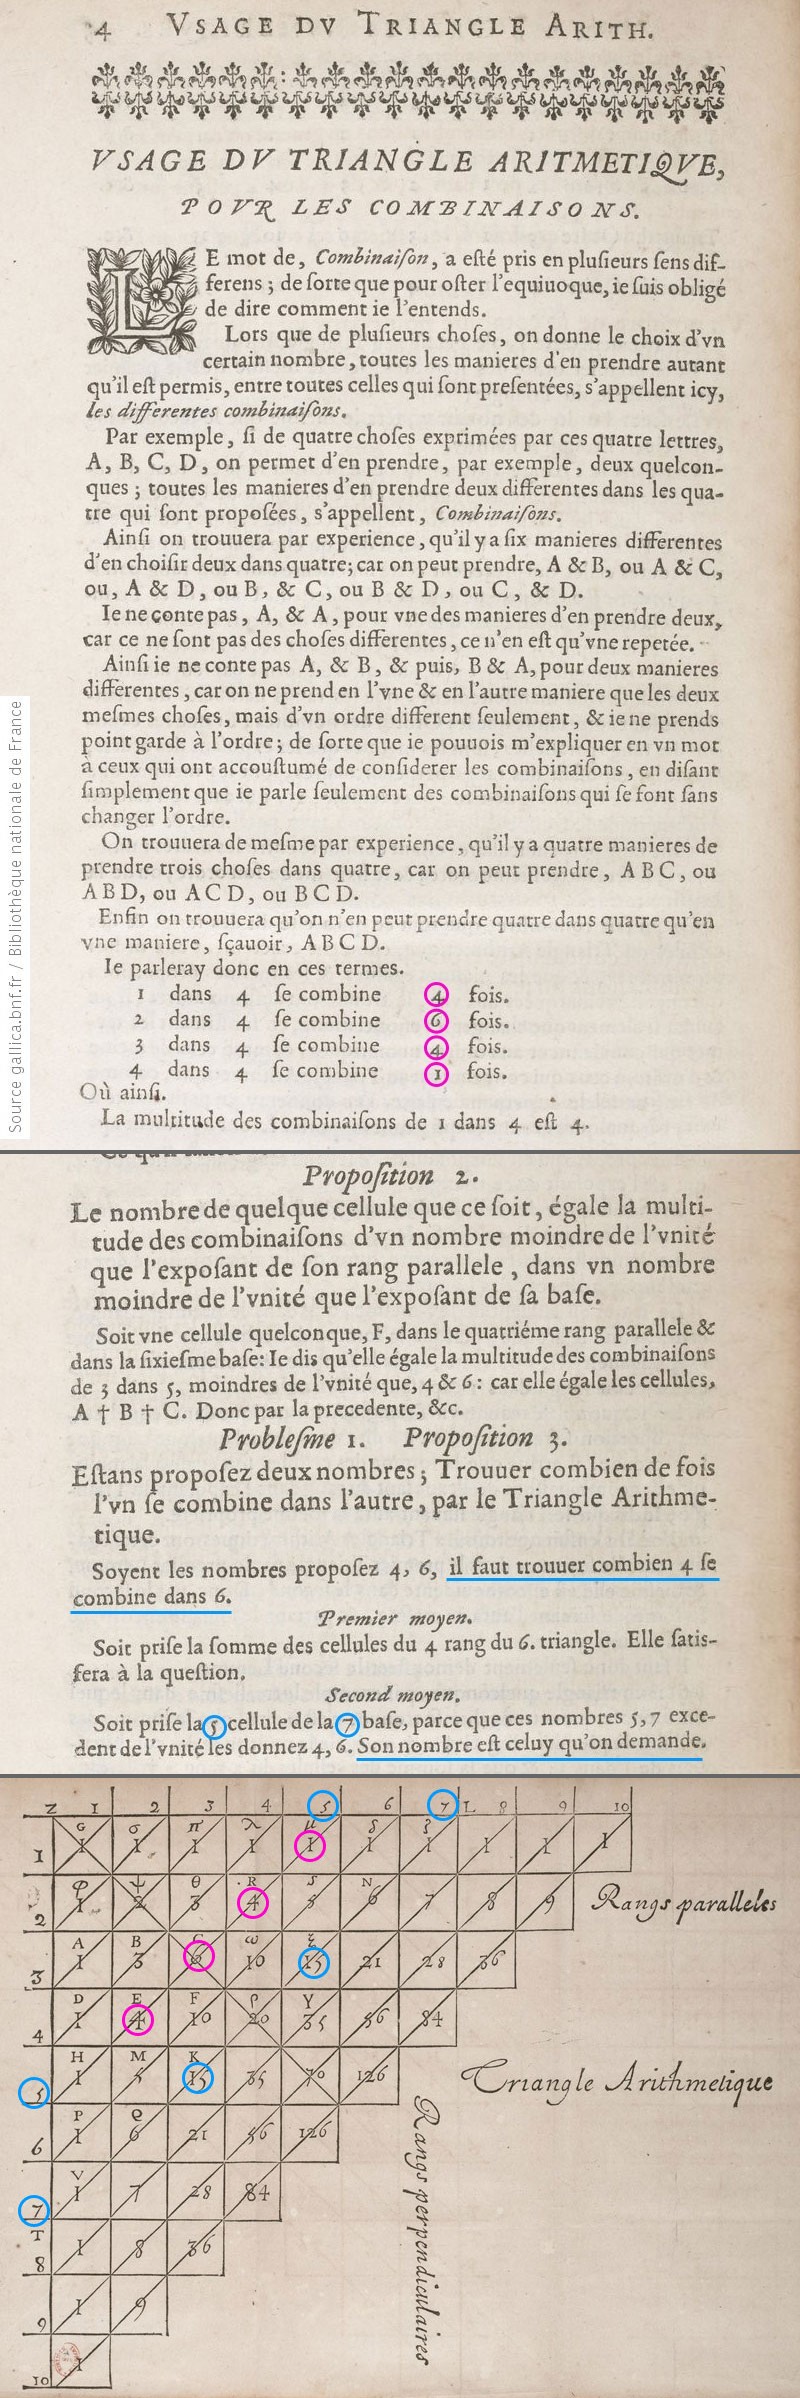 Image article, Quelques extraits du traité d'arithmétique publié en 1665, pages 22, 26 et 6